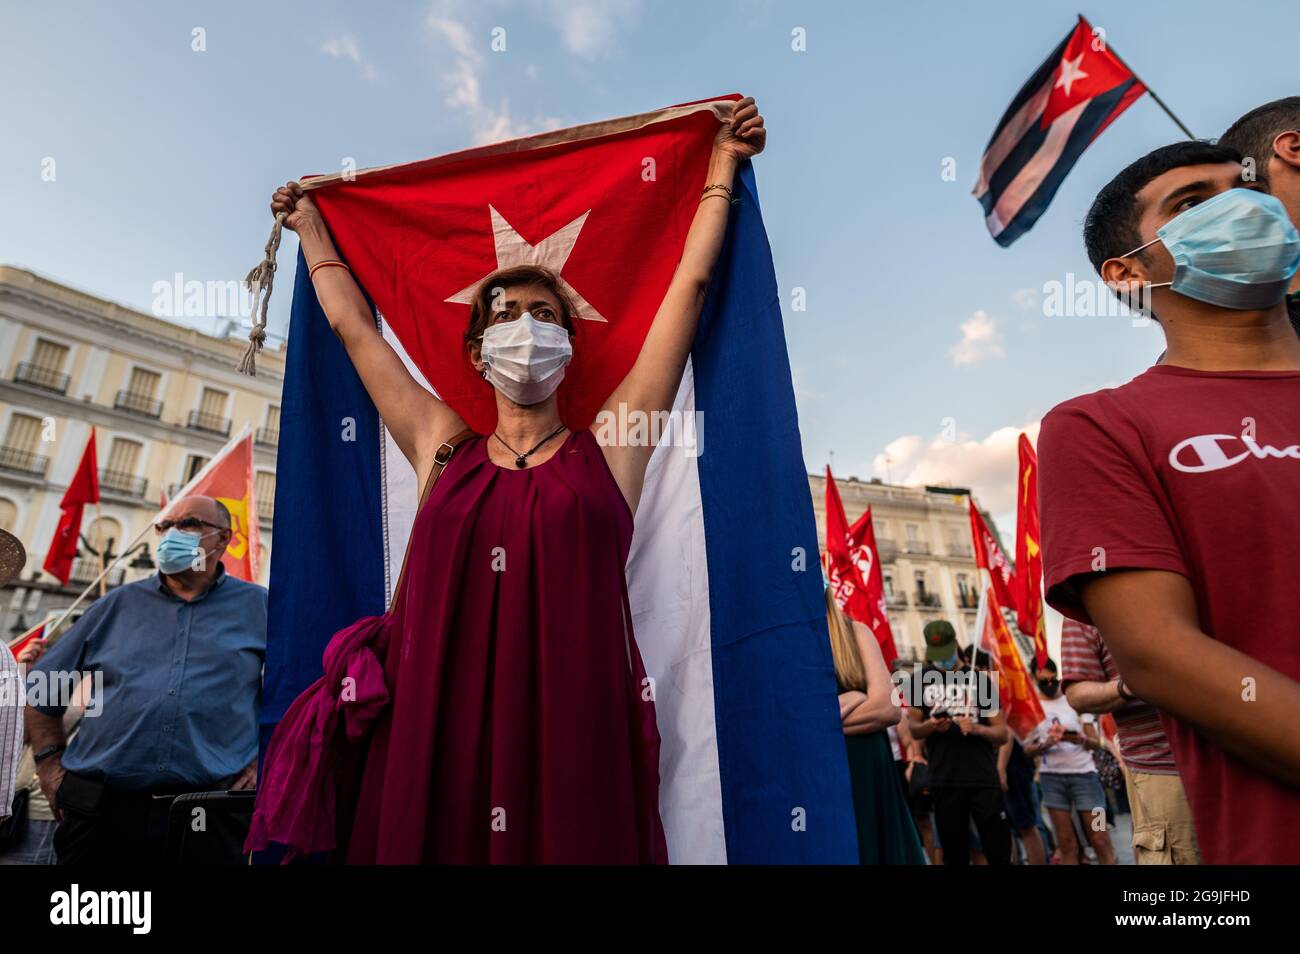 Madrid, Spagna. 26 luglio 2021. Manifestanti con bandiere cubane durante una manifestazione contro l'embargo economico statunitense su Cuba, in coincidenza con il 26 luglio, giorno in cui la rivoluzione cubana è iniziata nel 1953, 68 anni fa. Credit: Marcos del Mazo/Alamy Live News Foto Stock